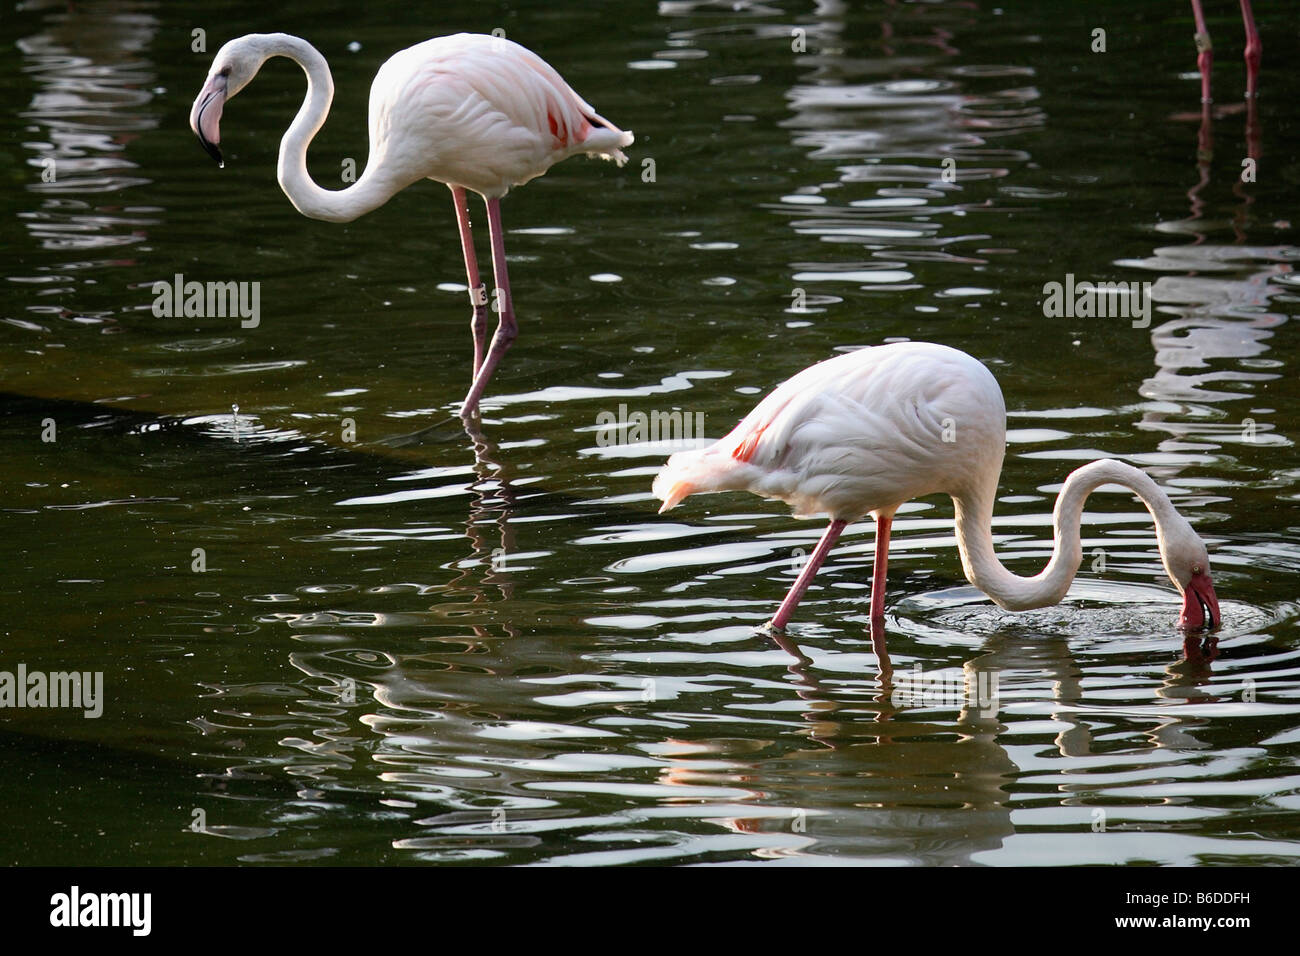 China Hong Kong Kowloon Park flamingos Stock Photo